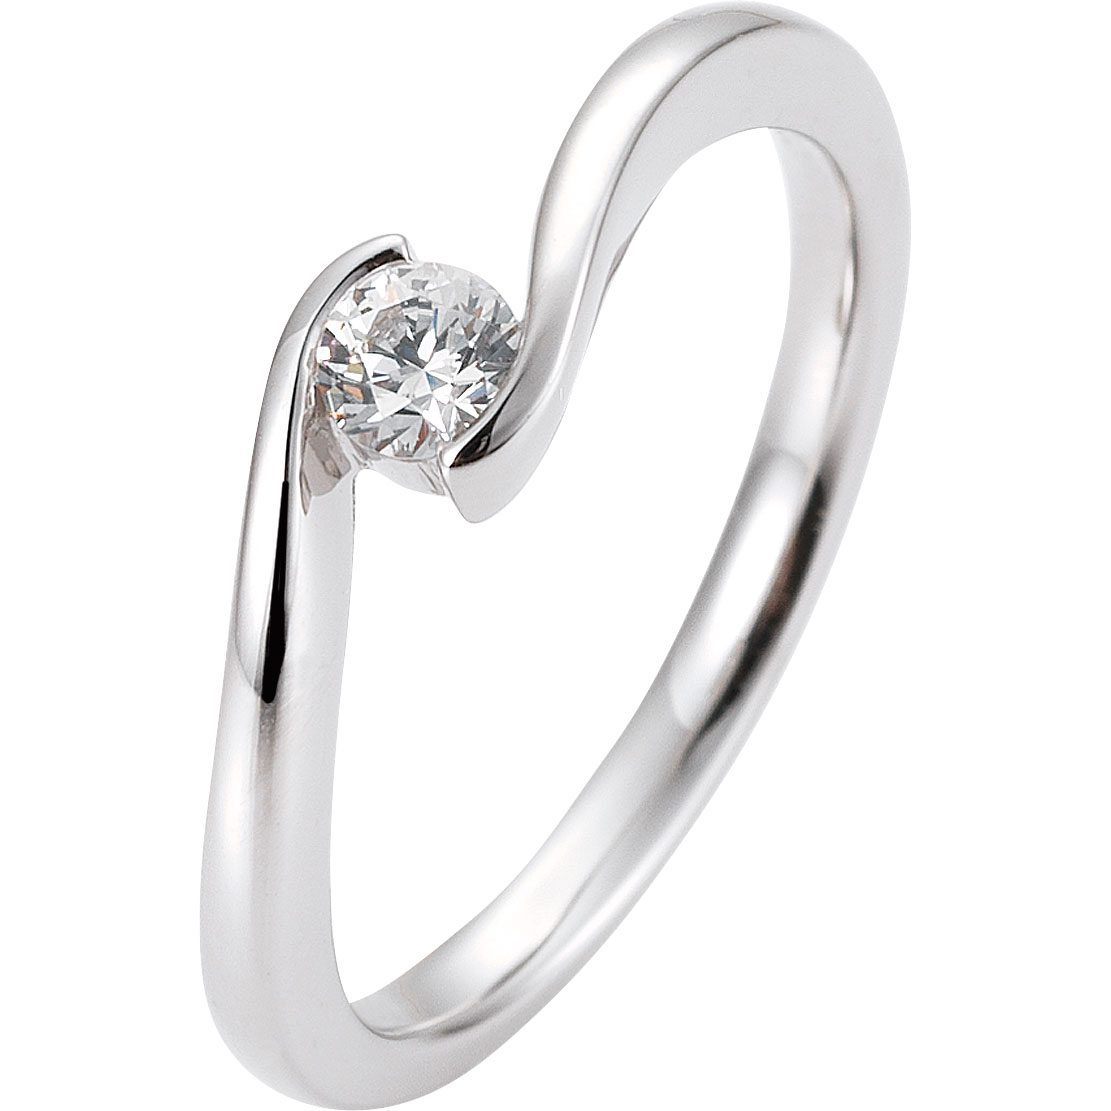 Kundenspezifisches Design von CZ-Ringen mit gravierbarem 925er-Silberschmuck im Großhandel